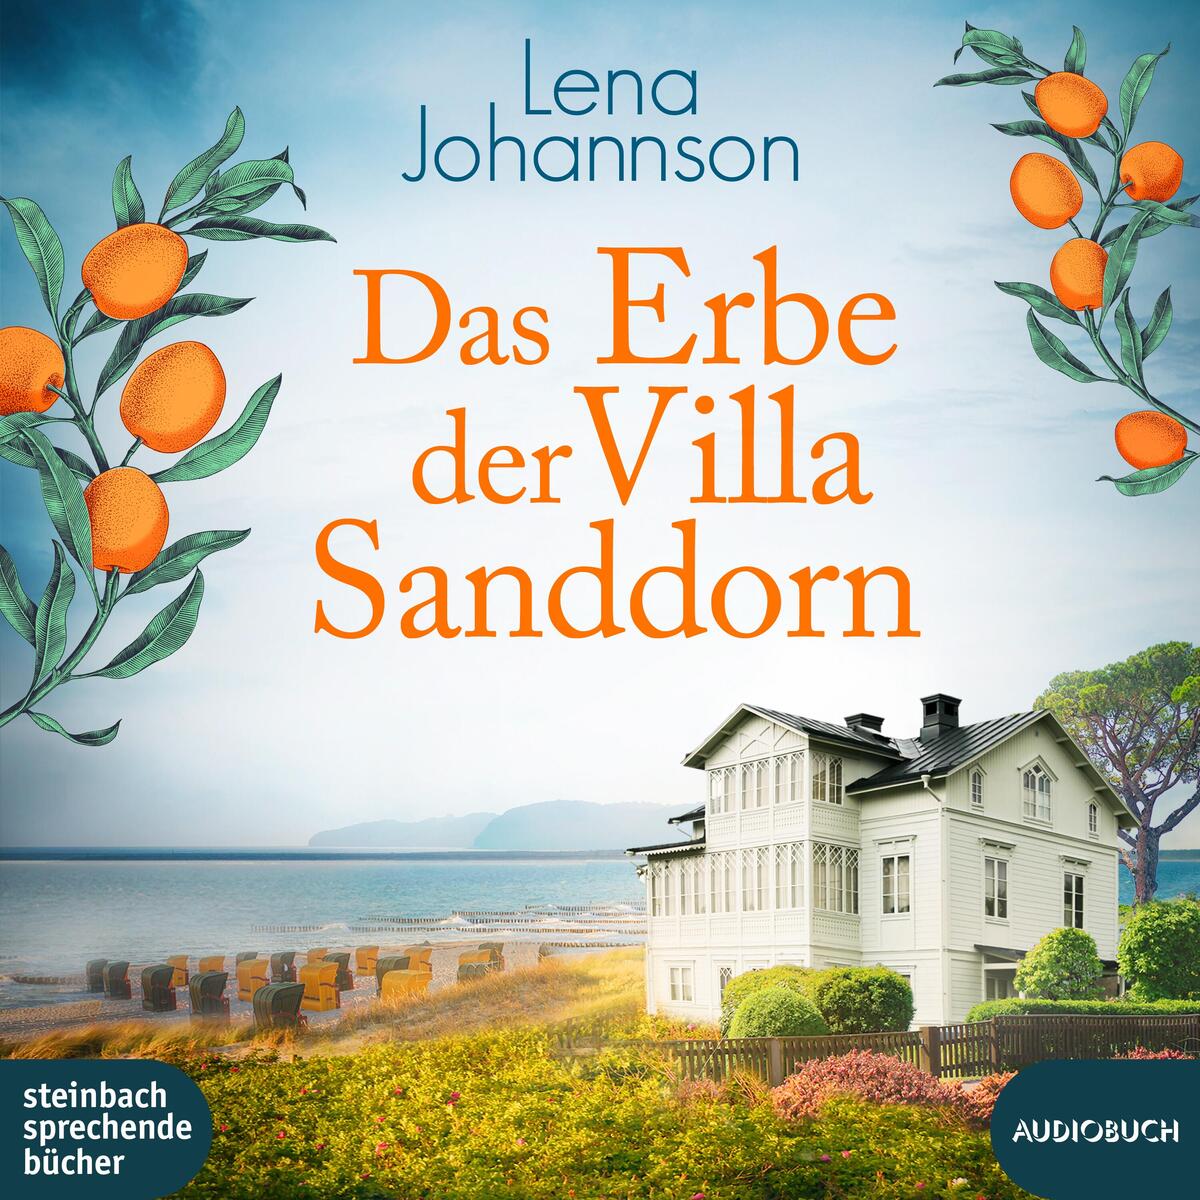 Das Erbe der Villa Sanddorn von Steinbach Sprechende